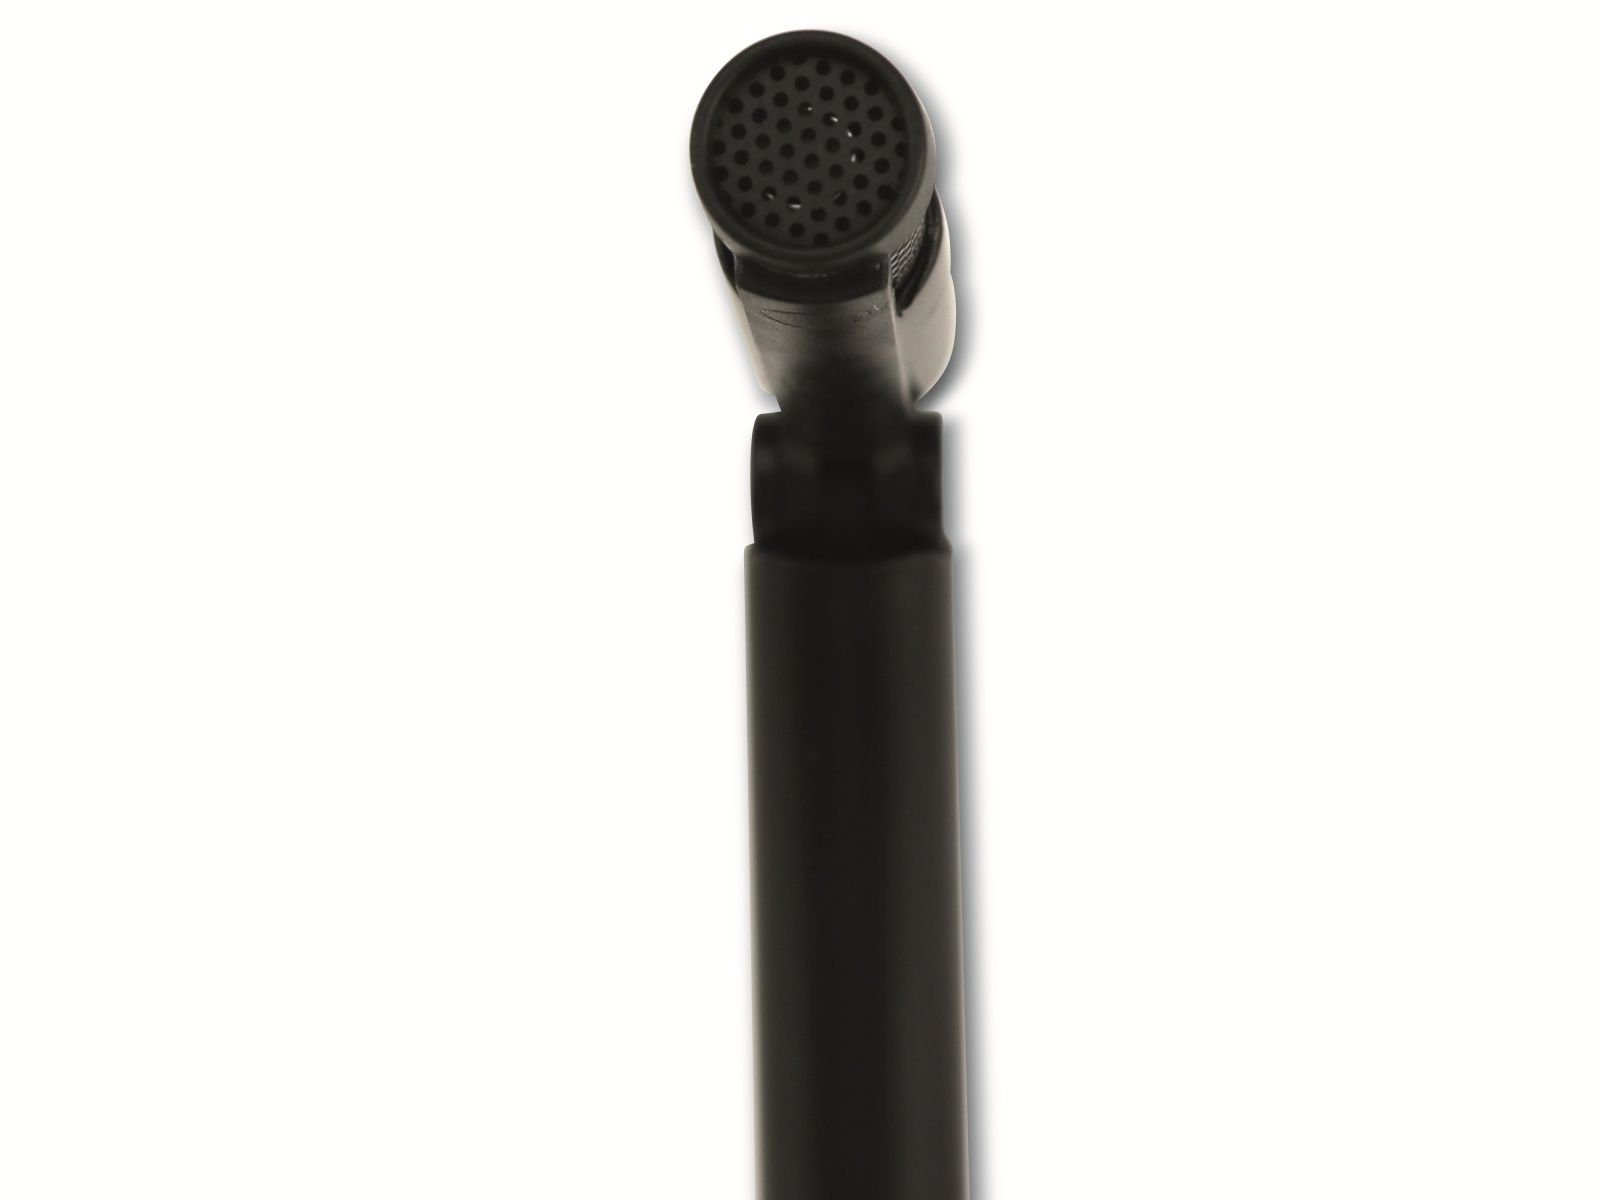 Velleman Mikrofon VELLEMAN HQMC10004, schwarz Tischmikrofon